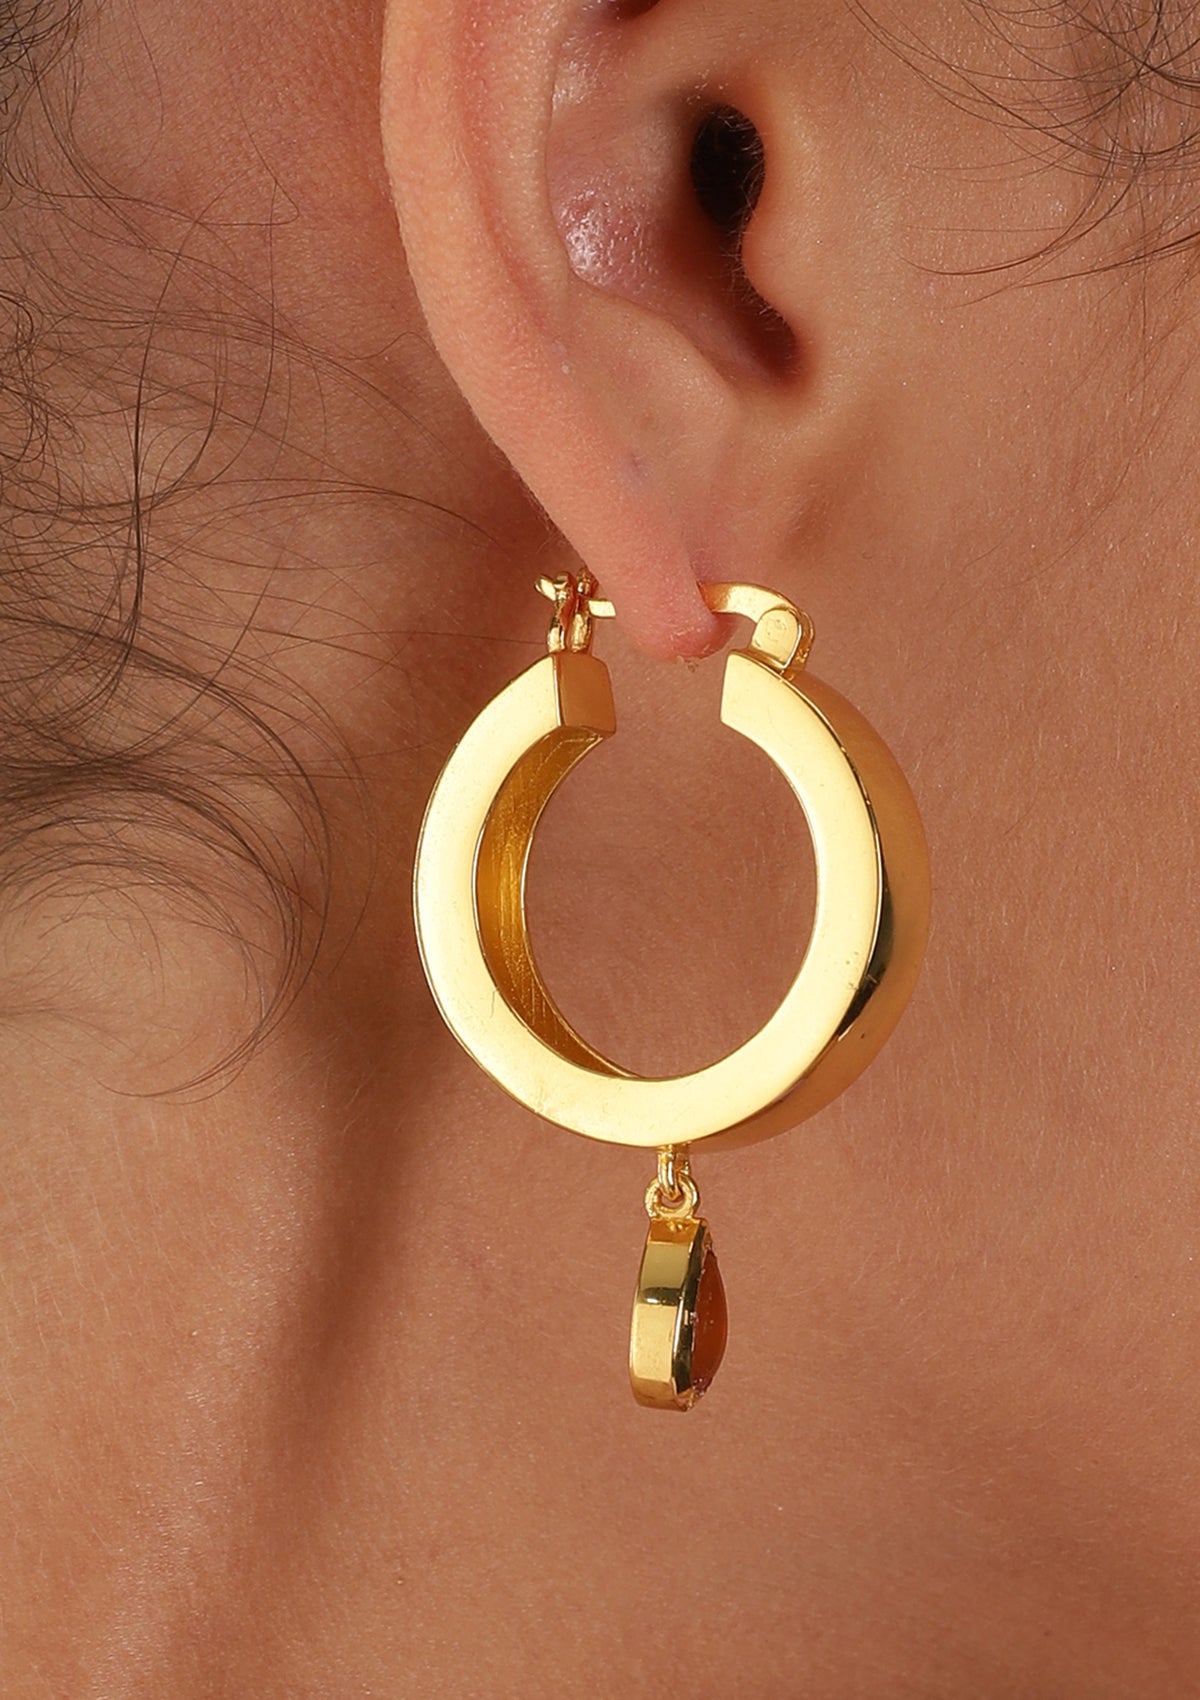 carnelian stud earrings